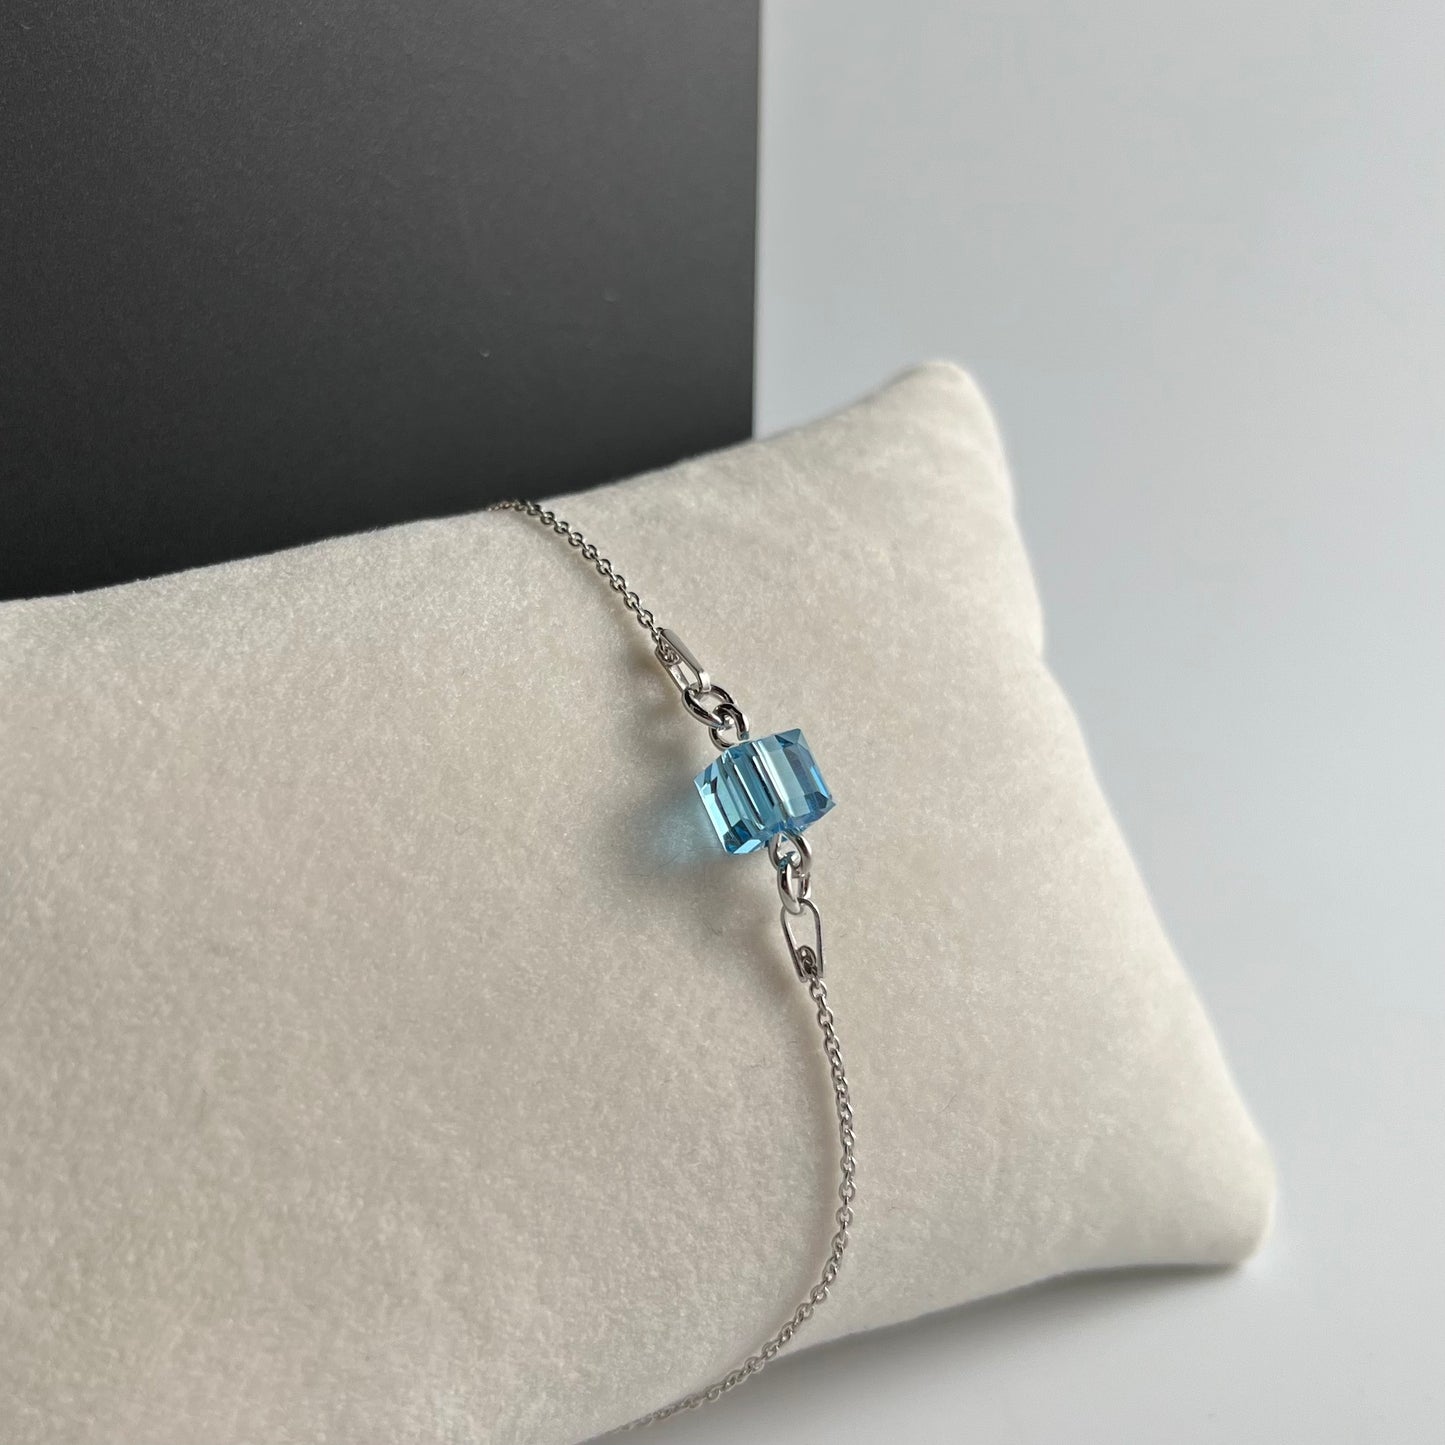 Bracelet  avec cristaux Swarovski, argent rhodié, bleu aquamarine, CARRE